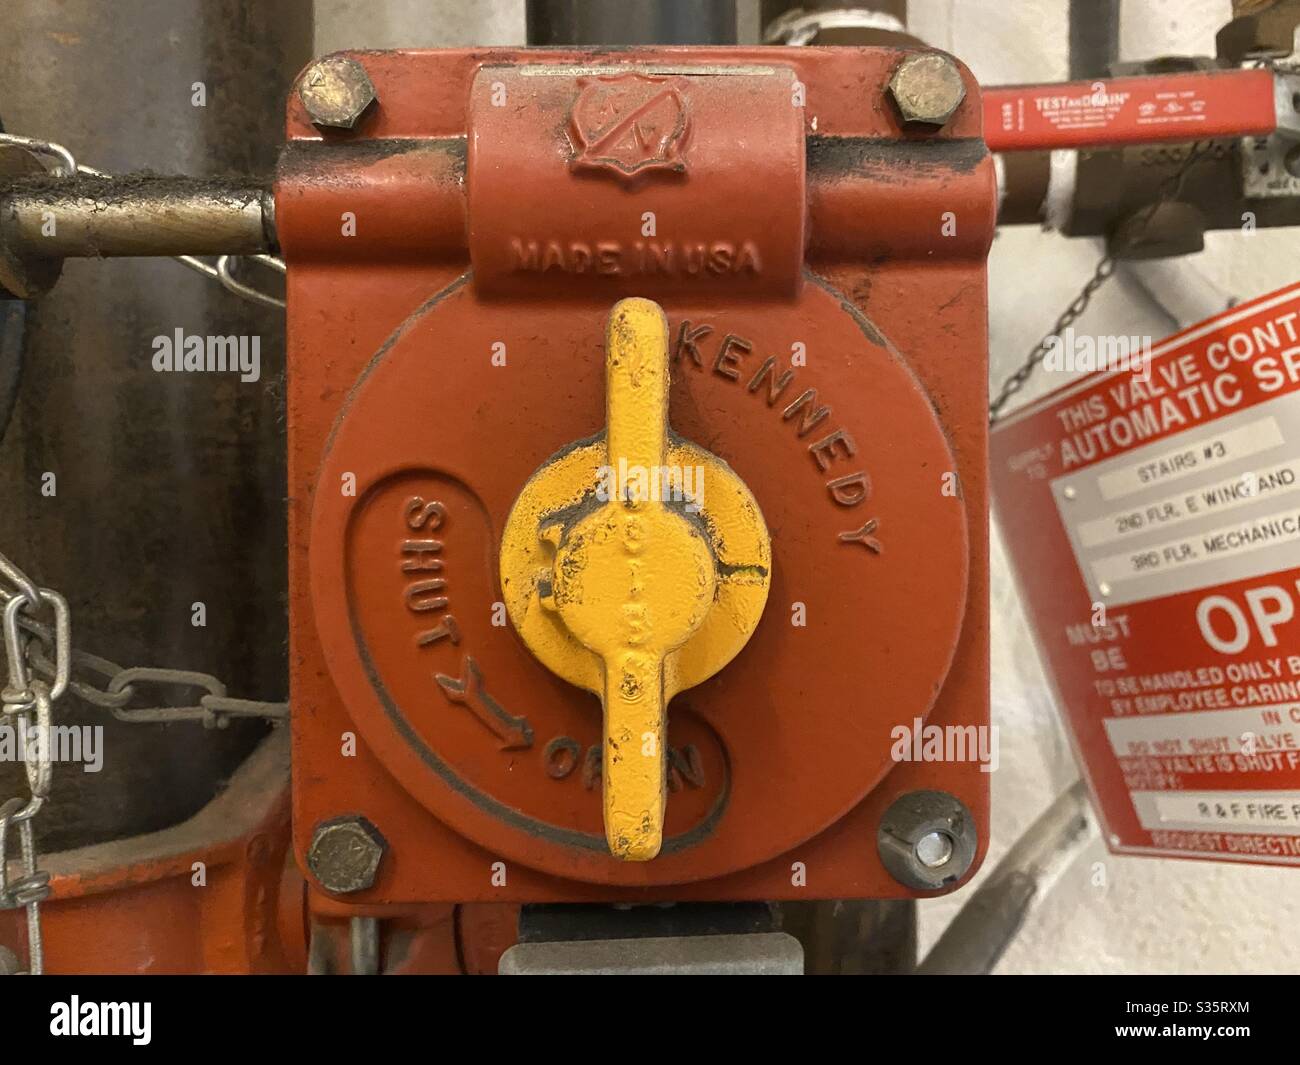 LOS ANGELES, CA, Apr 2020: Dettaglio del controllo della valvola di chiusura rossa con rubinetto giallo brillante, parte del sistema antincendio nell'edificio storico Foto Stock